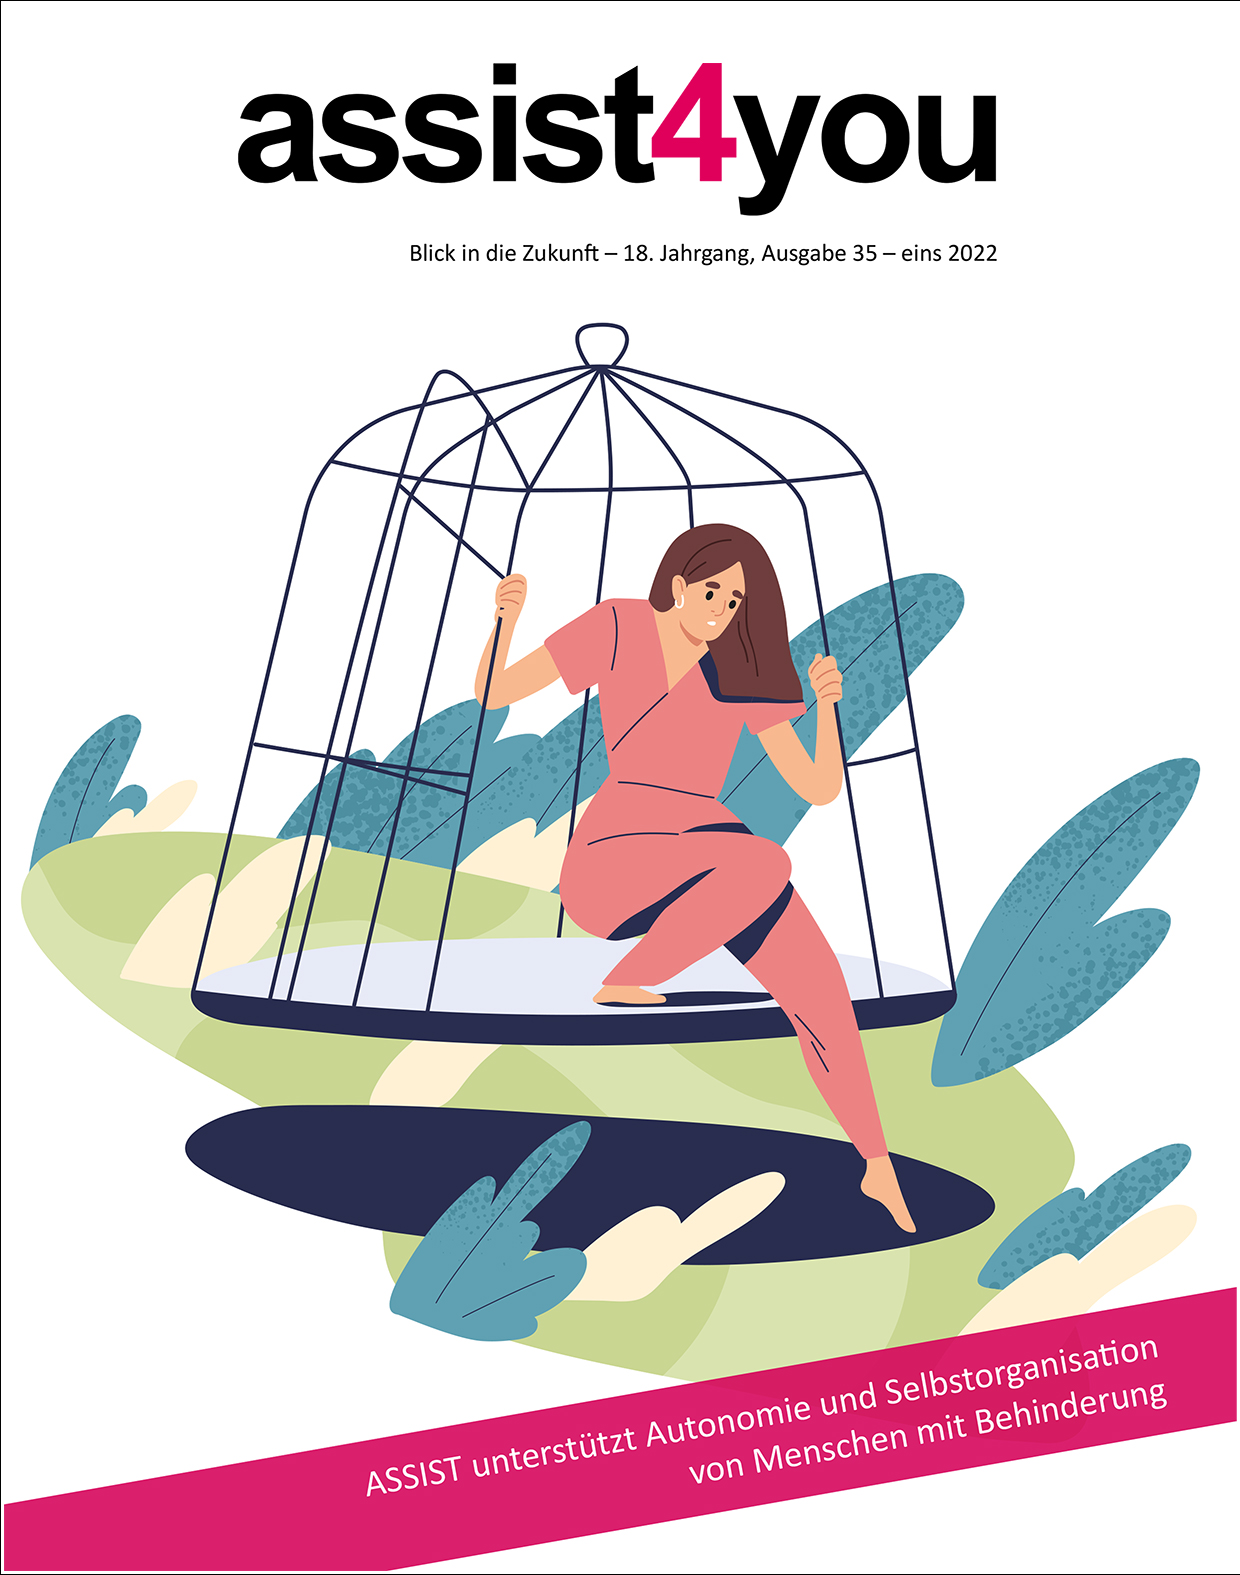 Das Cover der Ausgabe assist4you 2022 zeigt eine Frau, die aus dem Pandemie-Käfig aussteigt.